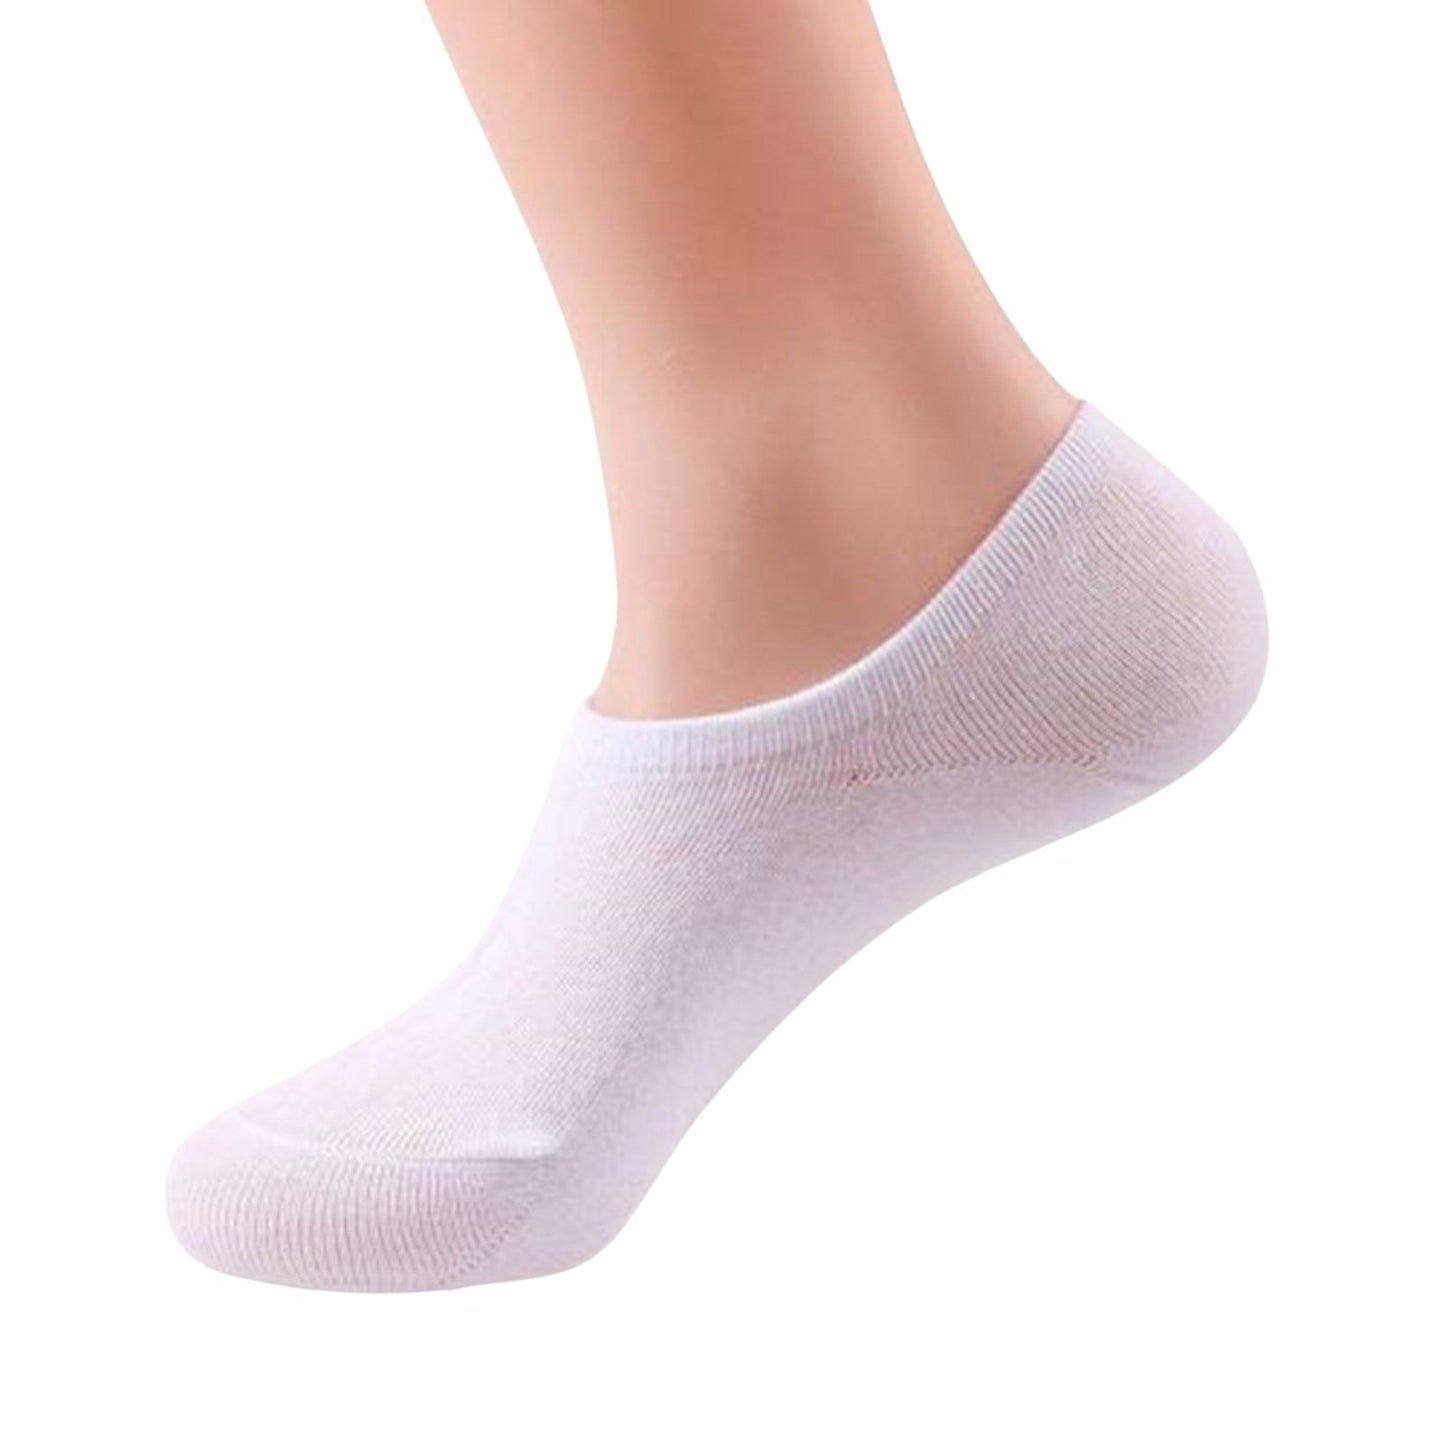 Casual Low Cut Premium Cotton Socks Invisible Design - 5 Pairs